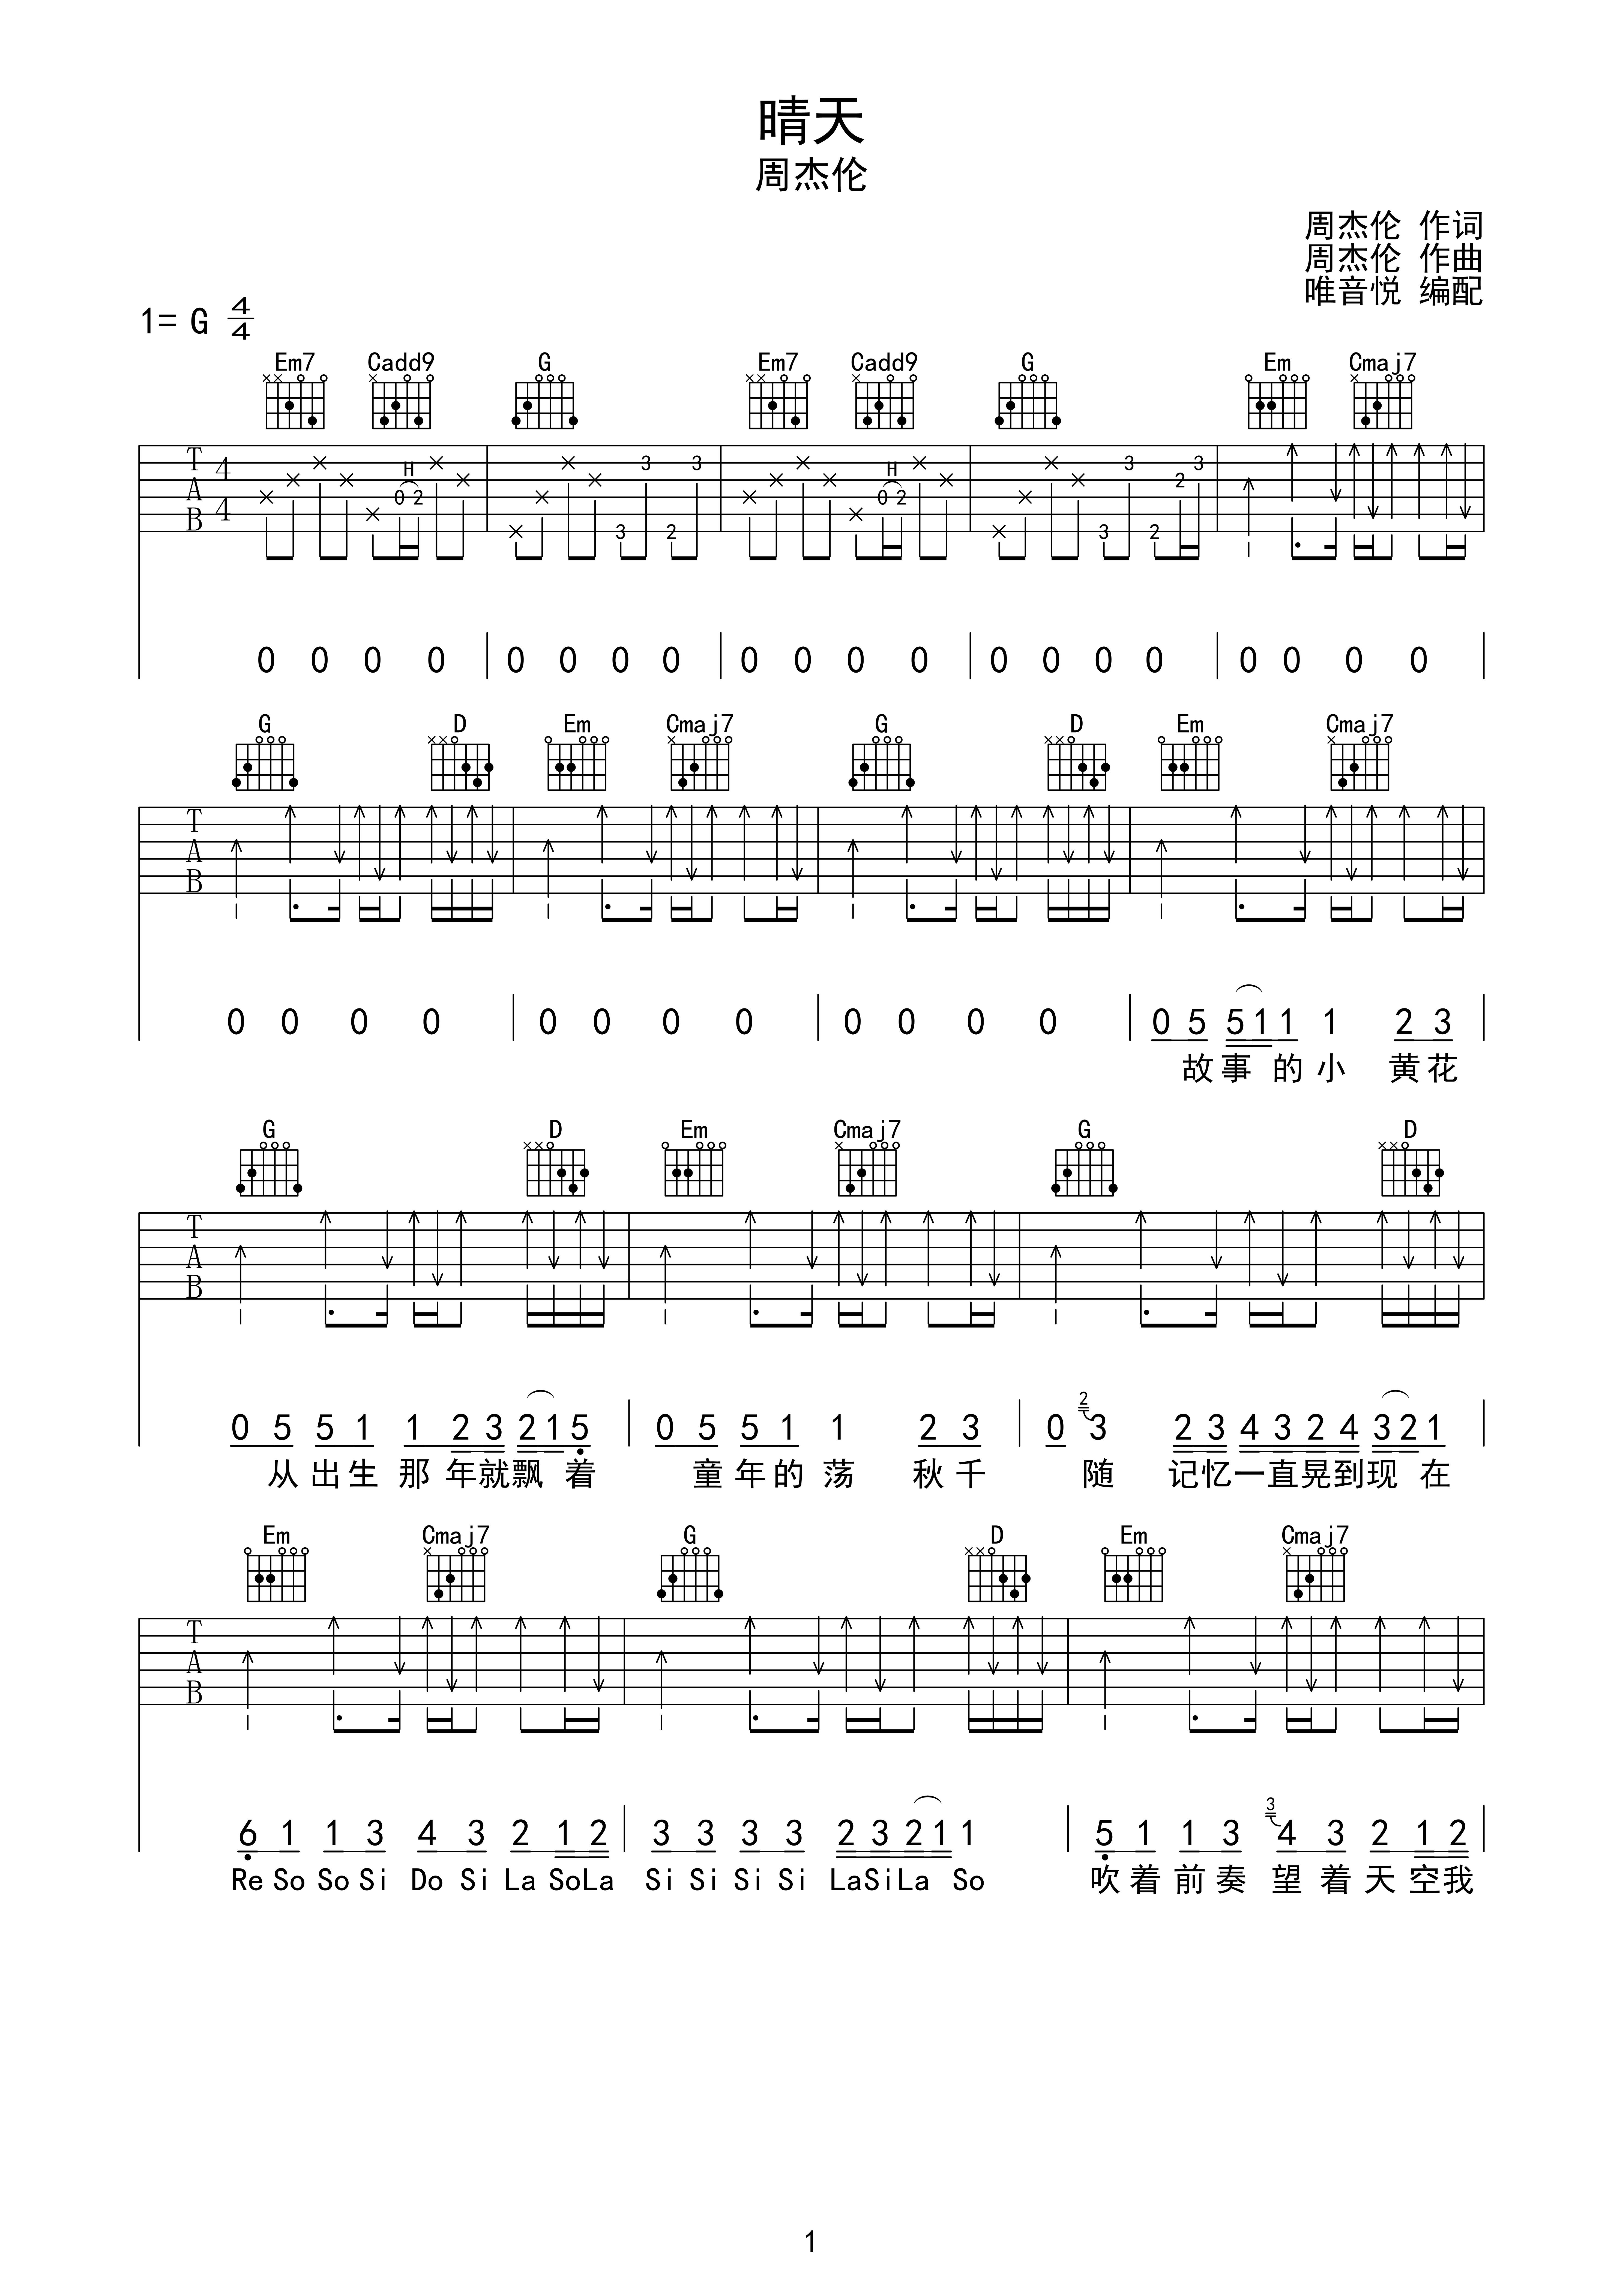 吉他六线谱下面的数字图片